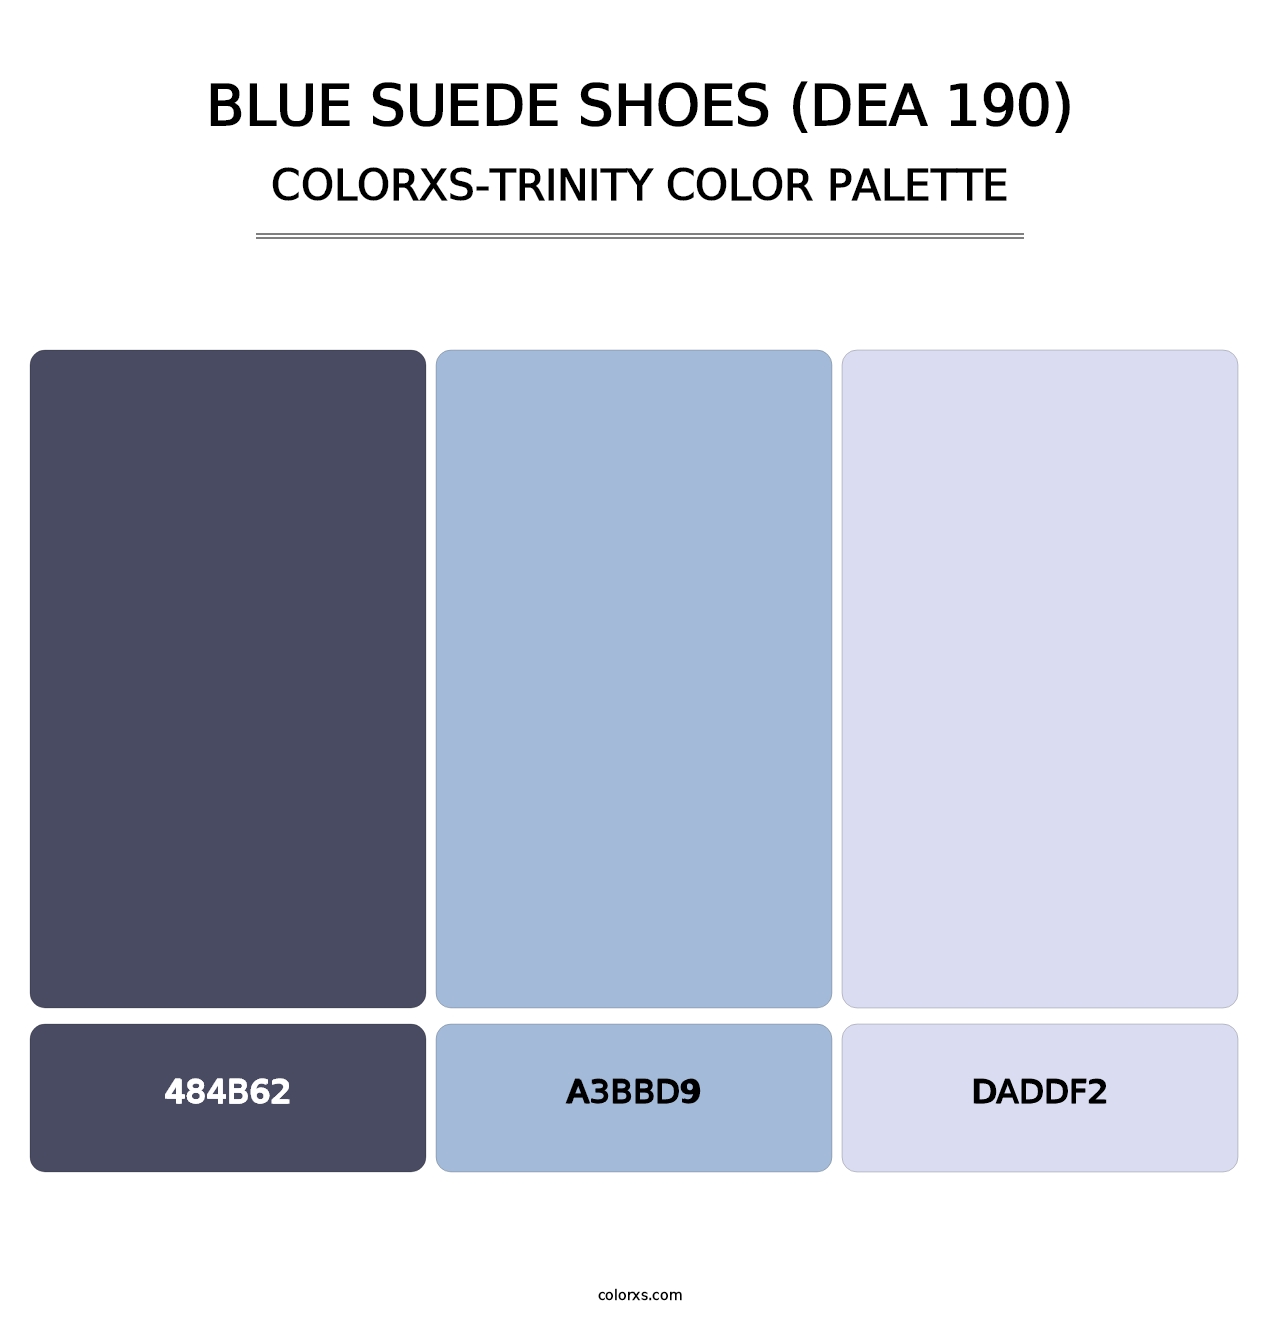 Blue Suede Shoes (DEA 190) - Colorxs Trinity Palette